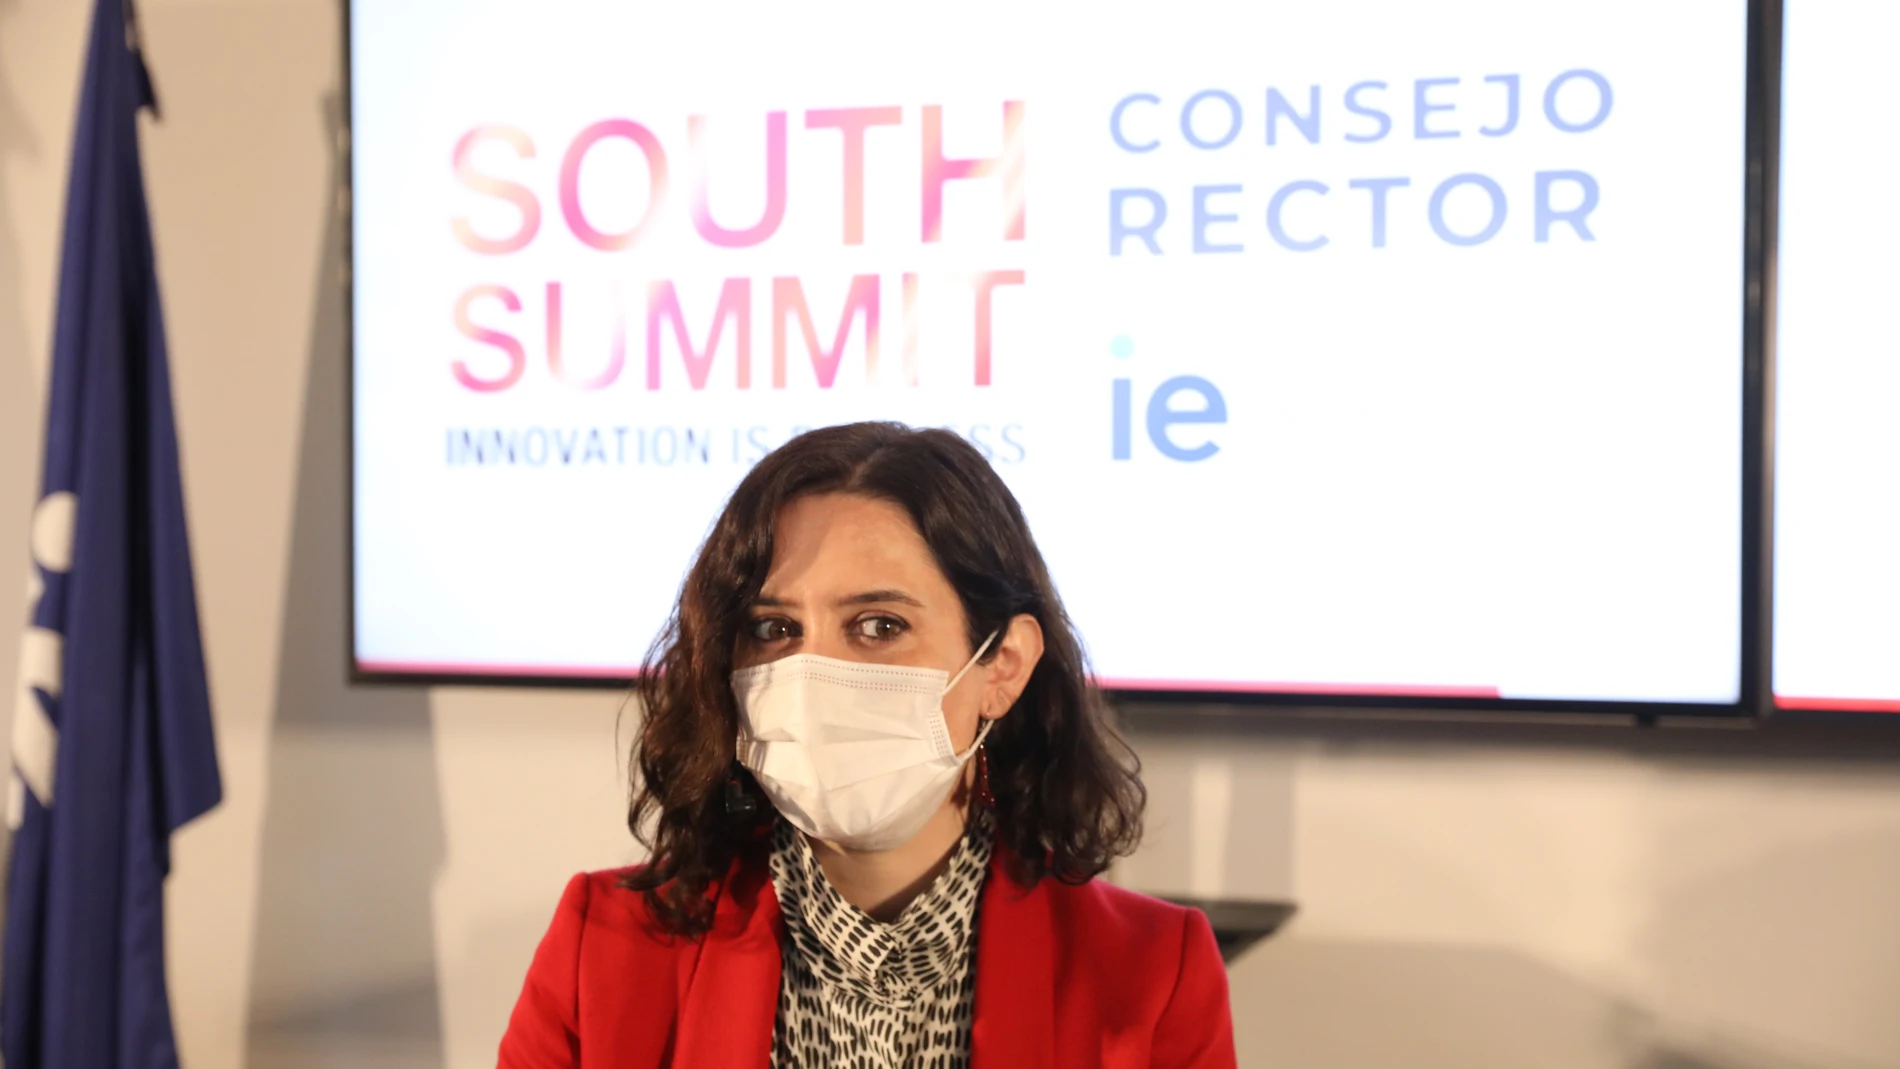 La presidenta de la Comunidad de Madrid, Isabel Díaz Ayuso, durante una reunión organizada con miembros del Consejo Rector de South Summit 2021, en IE University, Madrid